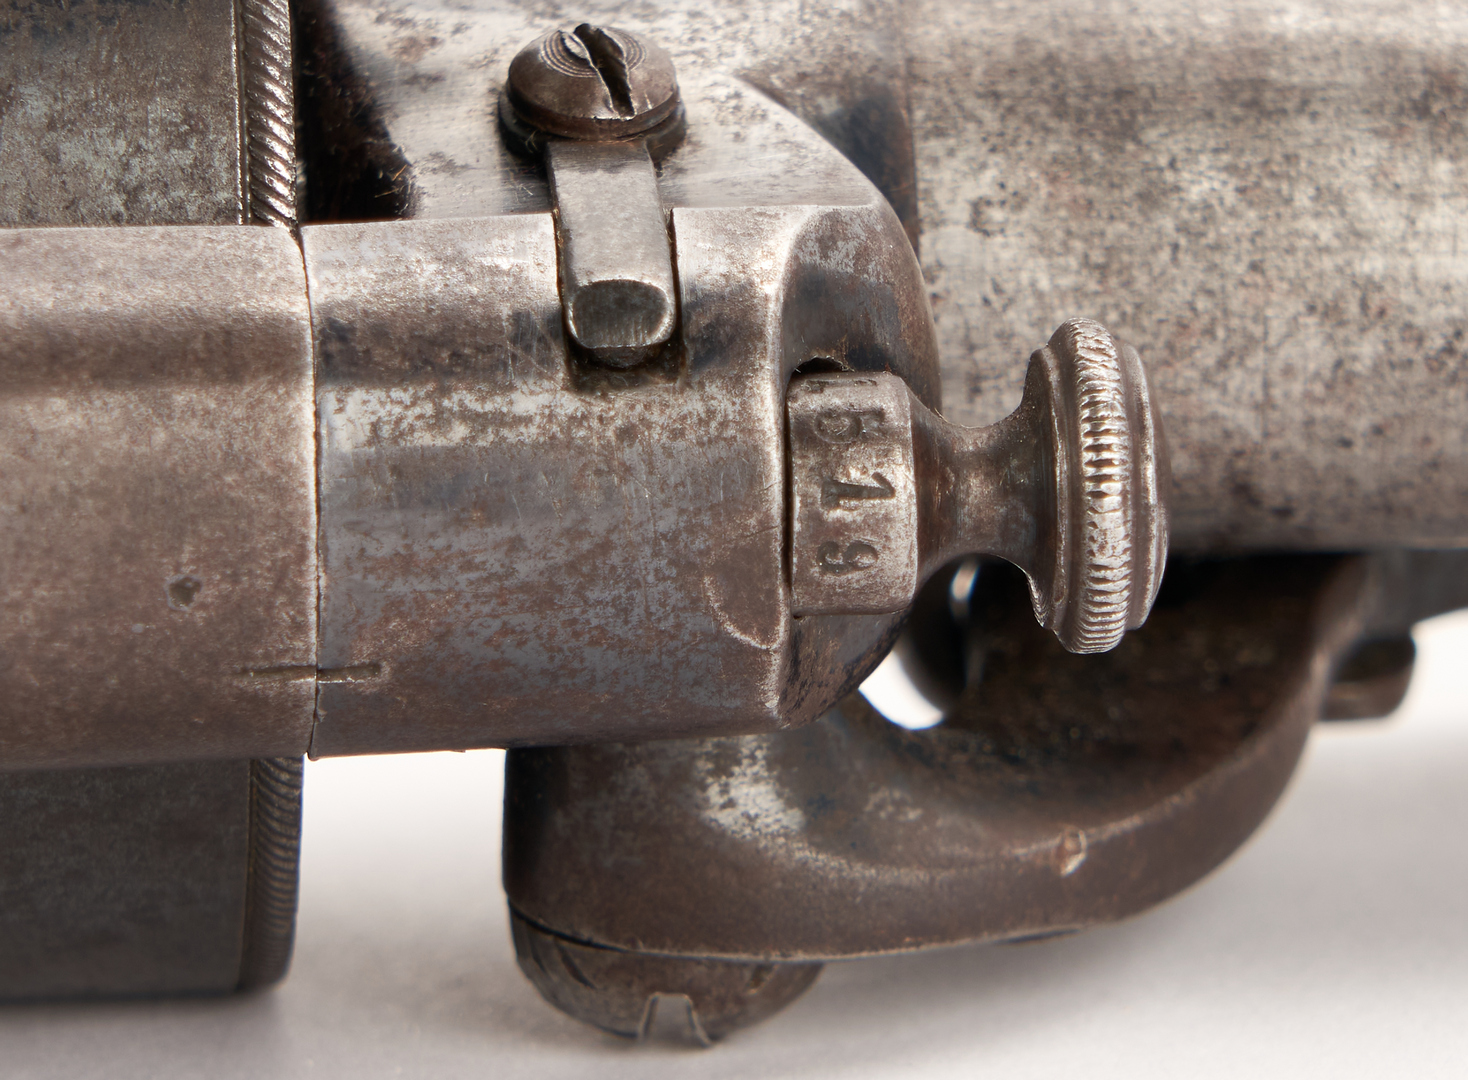 Lot 659: Civil War Confederate LeMat Revolver, .42 & .63 cal.